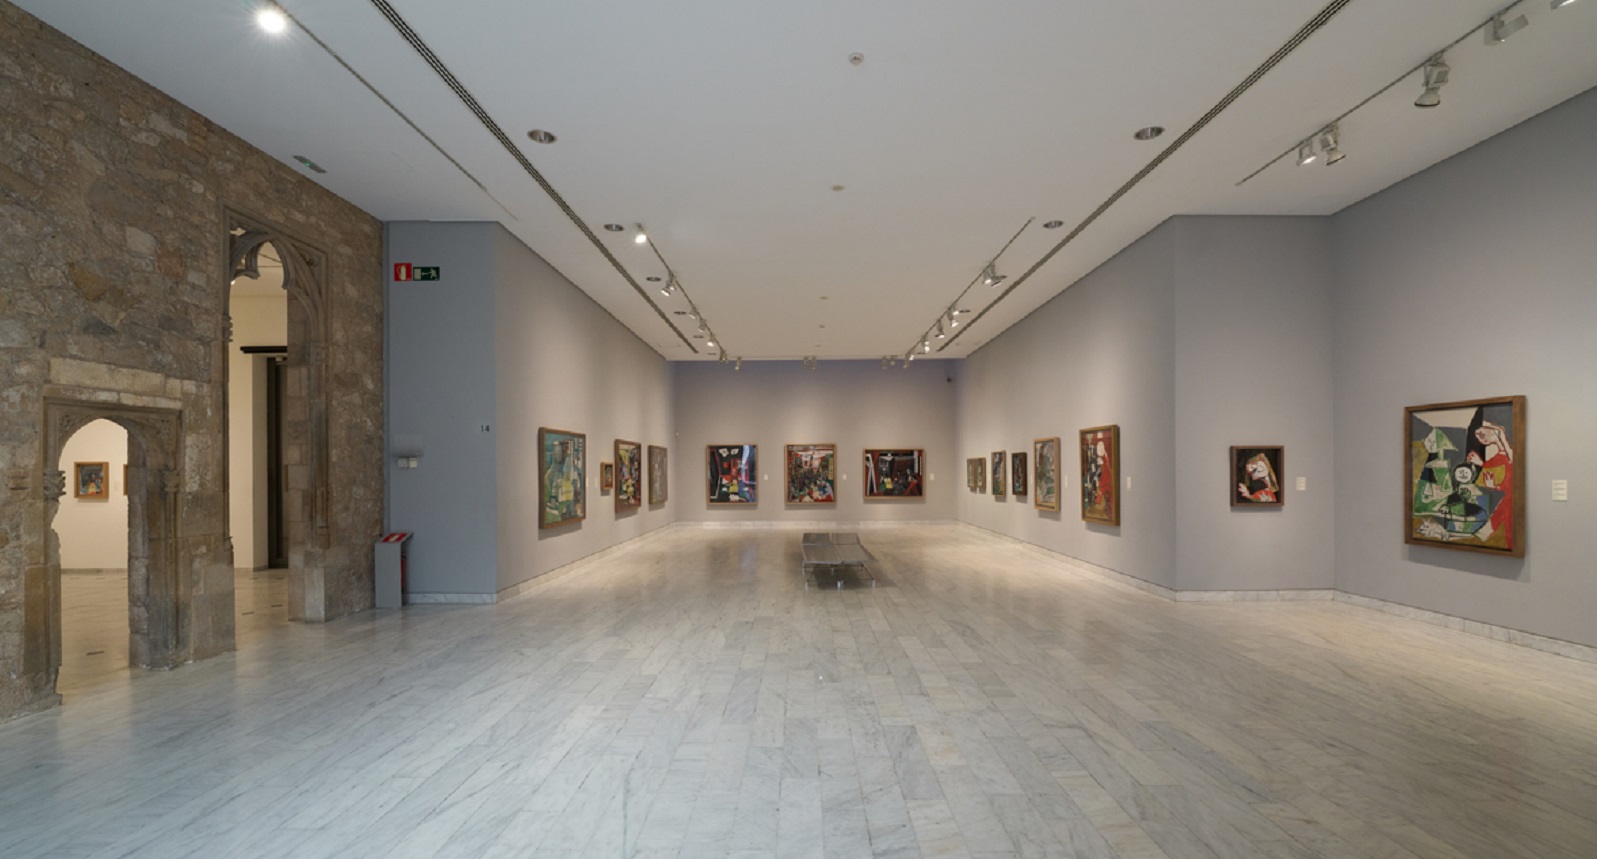 Colección permanente del Museu Picasso, Barcelona.